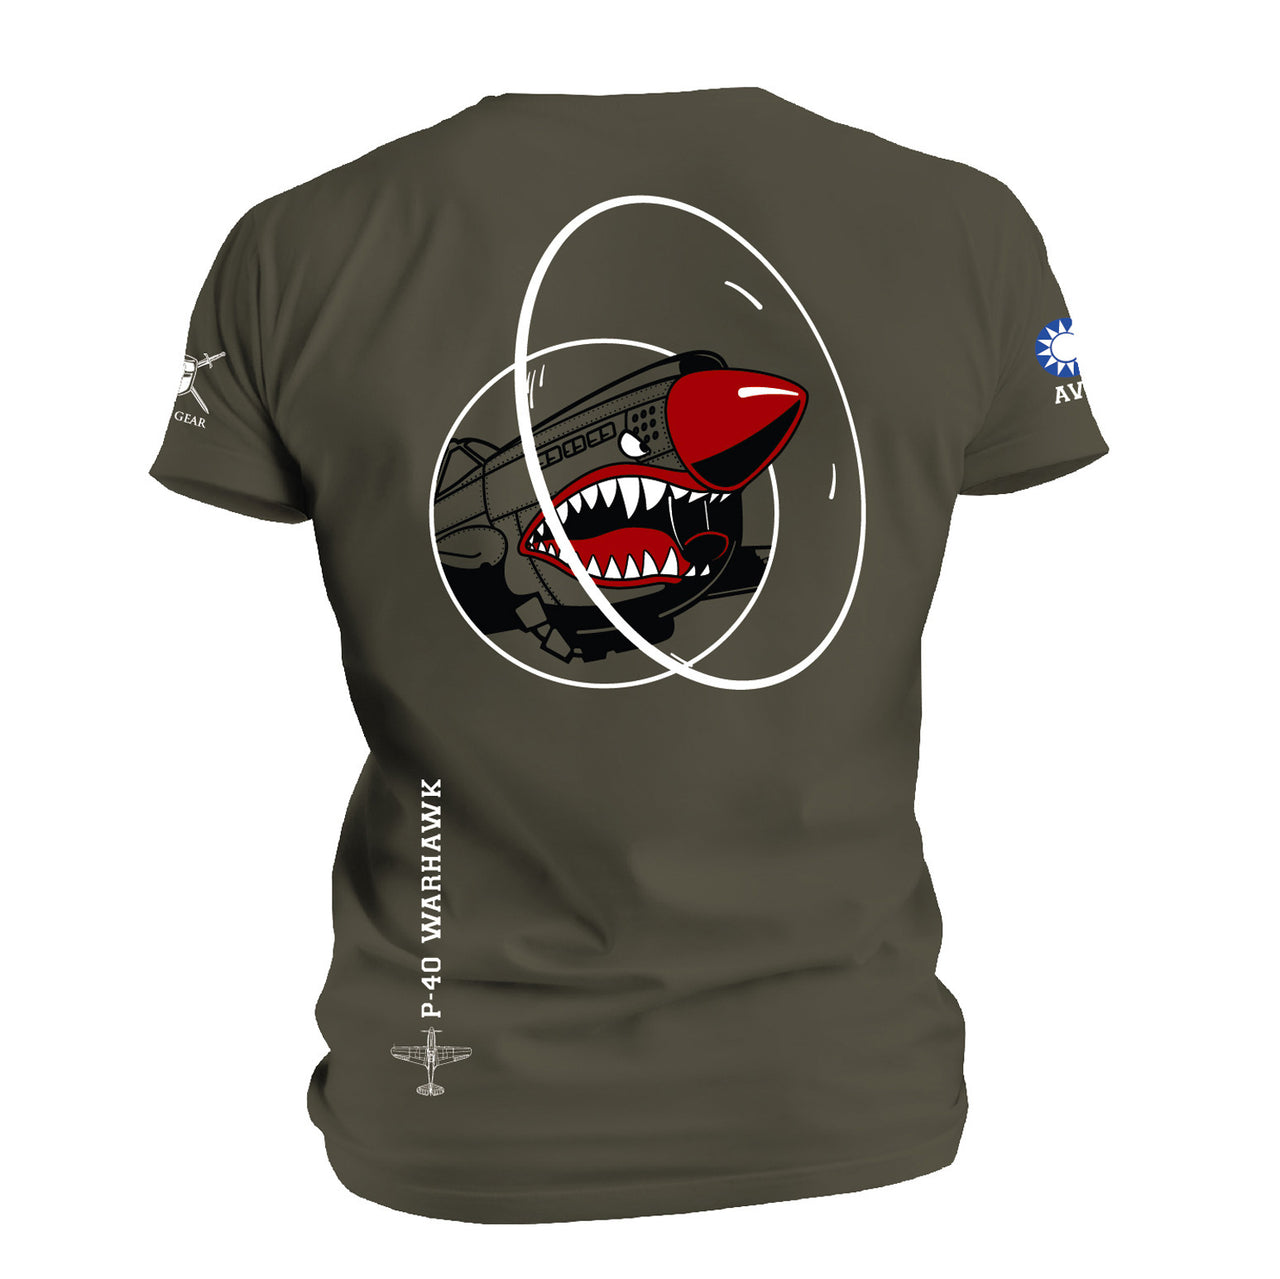 P-40 Warhawk T-shirt